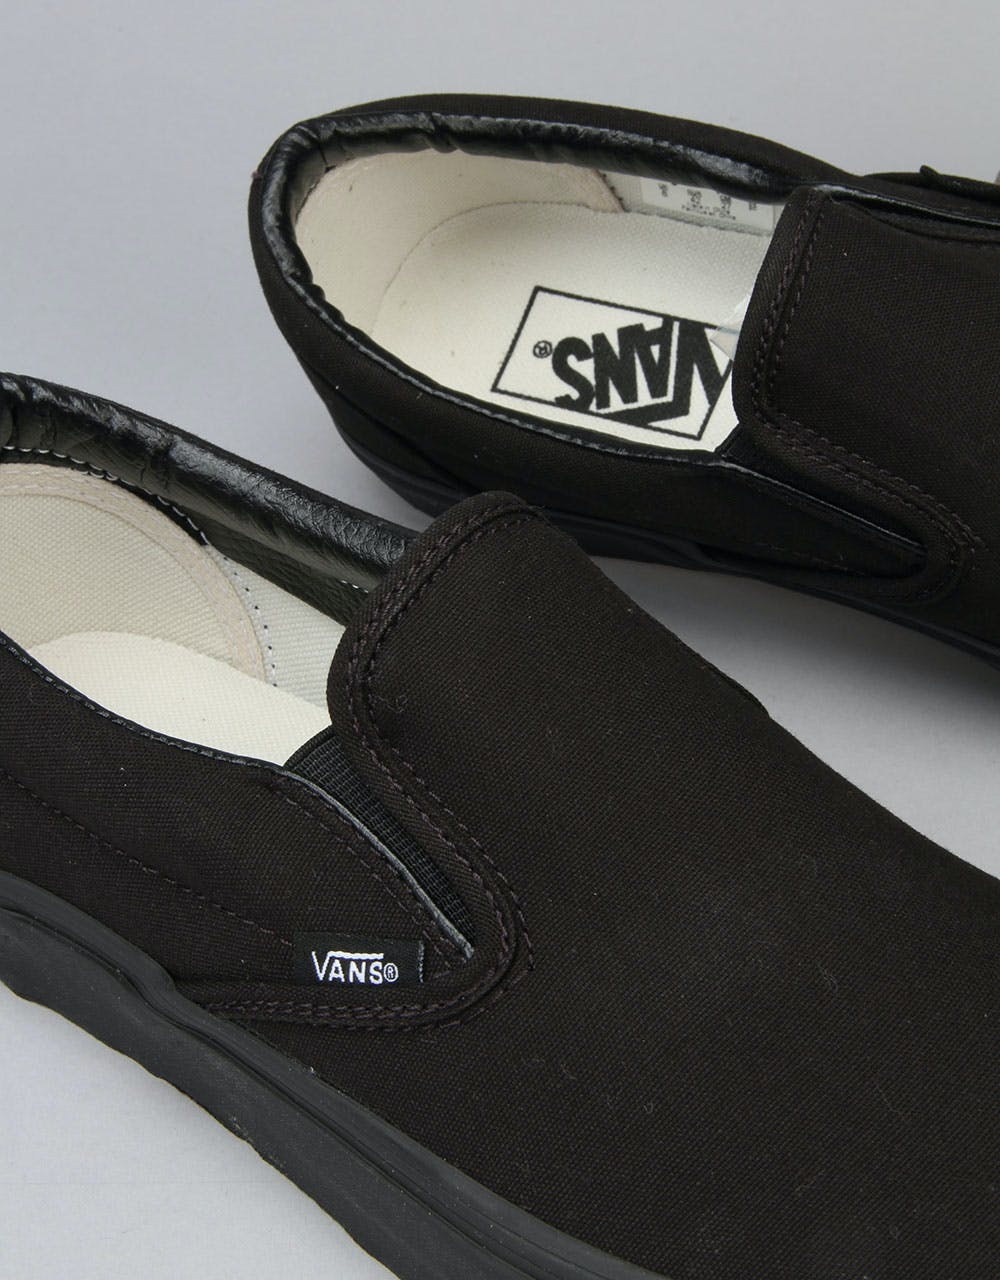 Vans Classic Slip On Skate Shoes - Black/Black